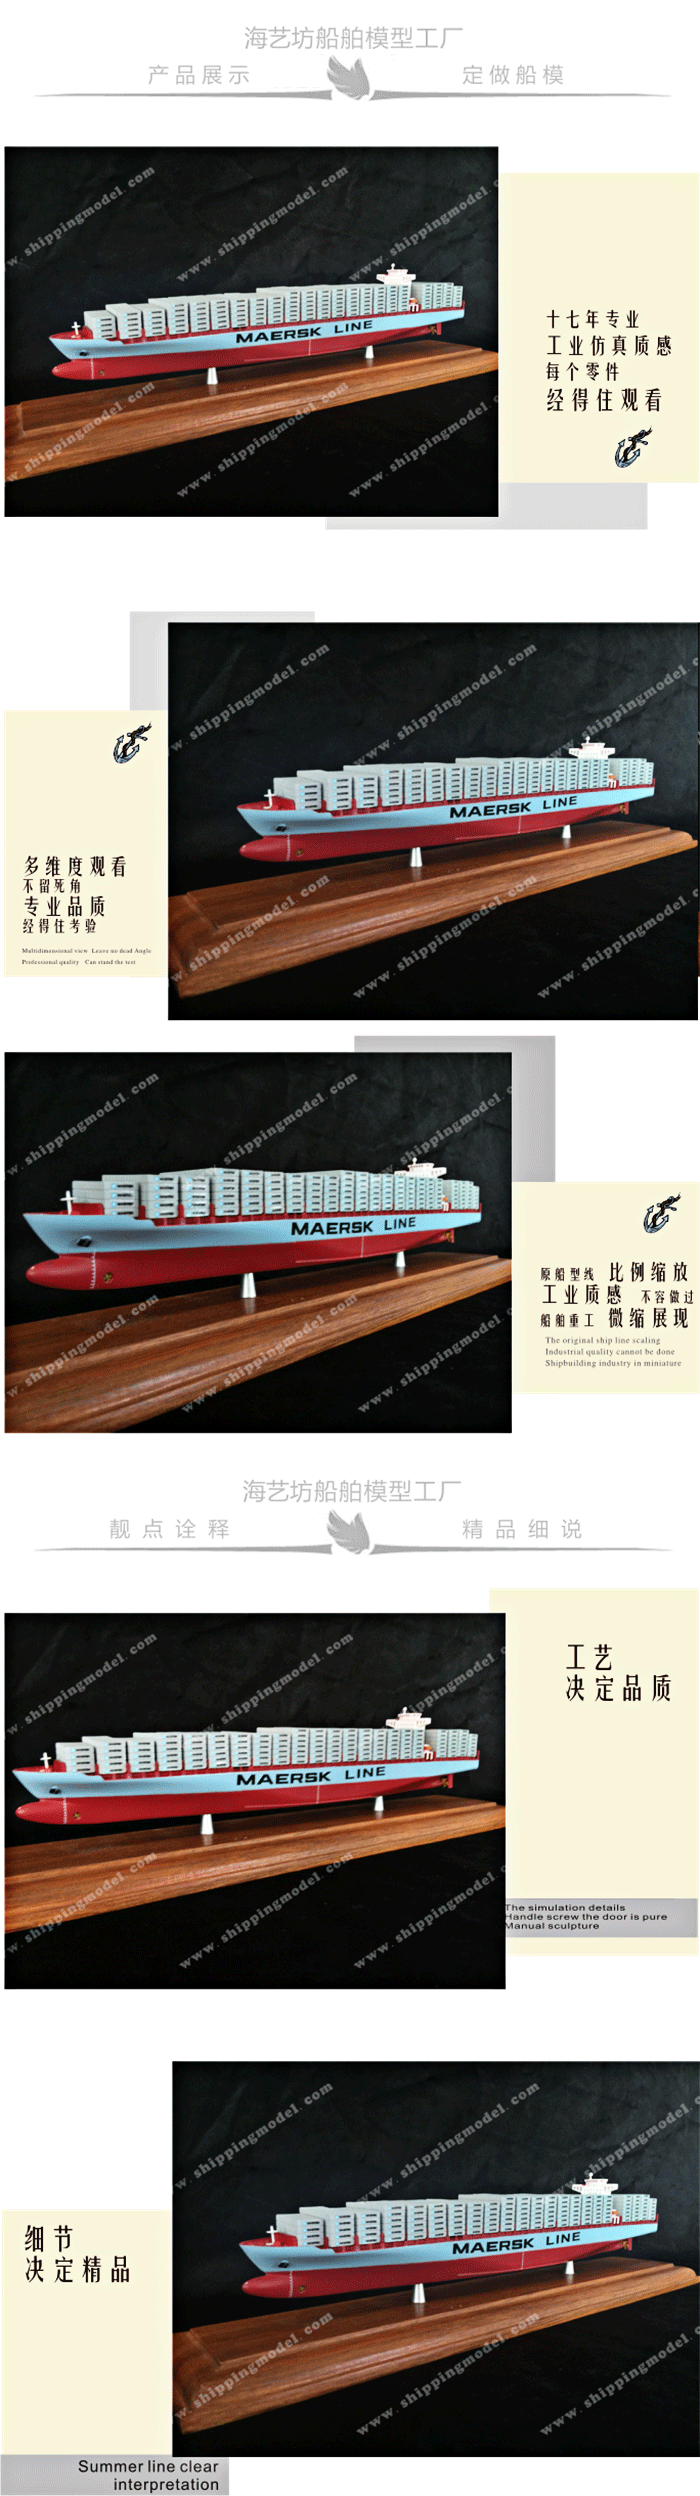 船定制船模__35CM 马士基集装箱船模型_定做船模_海艺坊模型